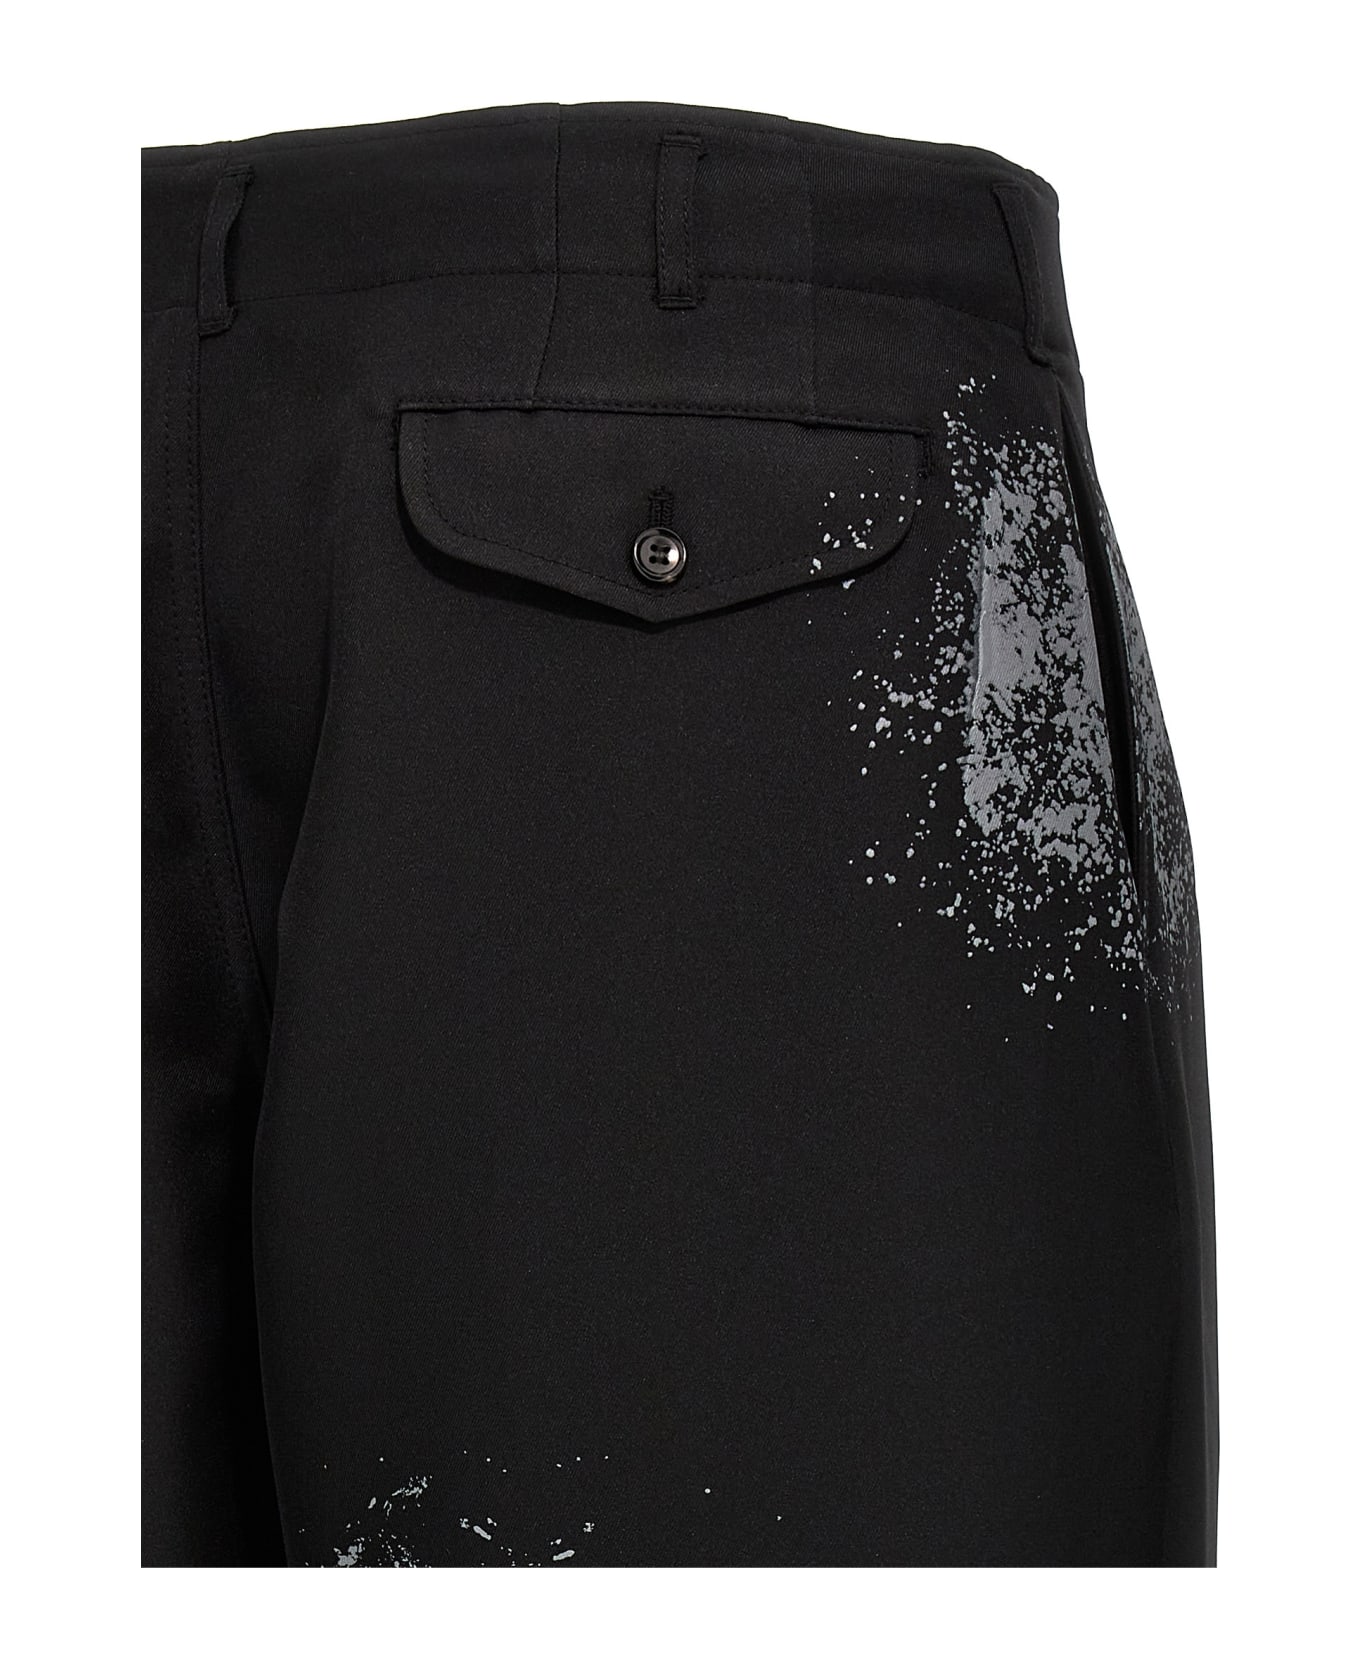 Comme des Garçons Shirt Printed Trousers - Black  